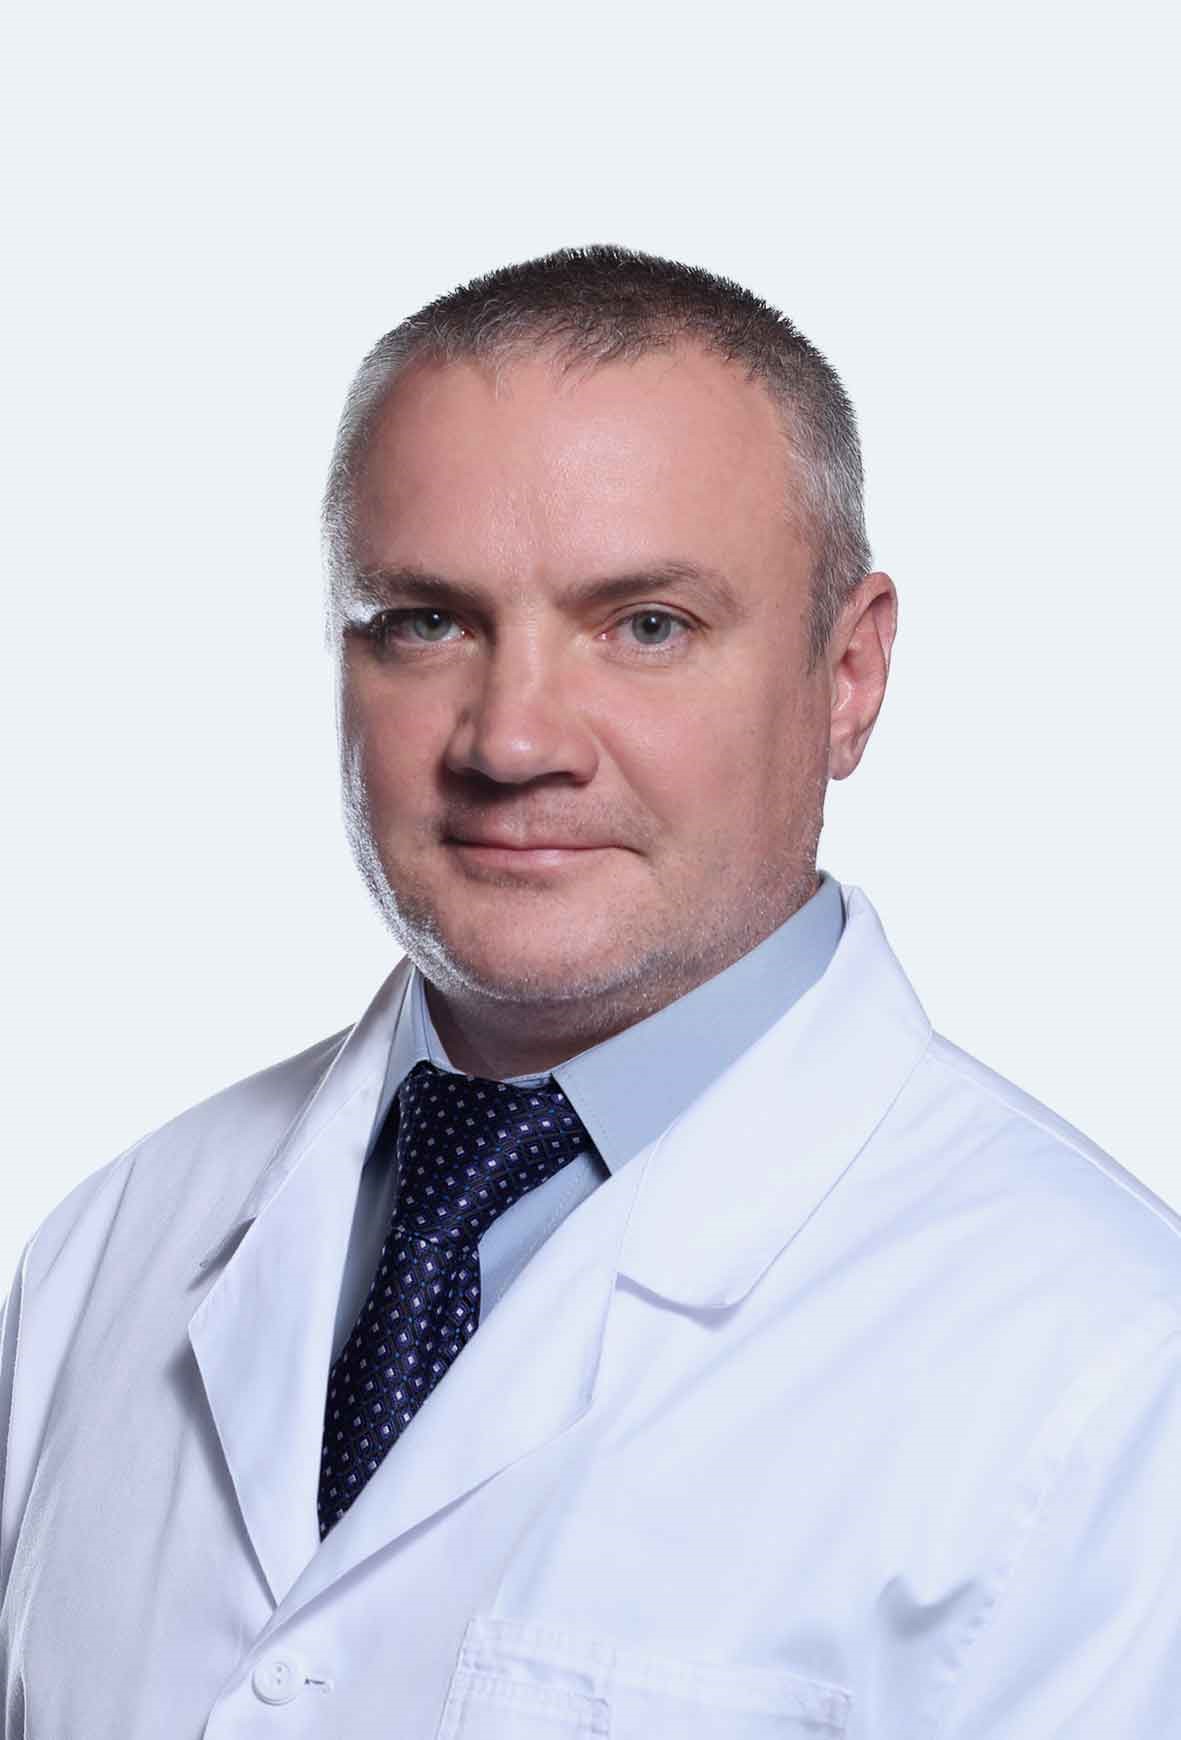 Лядов Сергей Алексеевич — врач уролог-андролог, врач высшей категории, стаж работы более 10 лет. Оперирующий хирург.